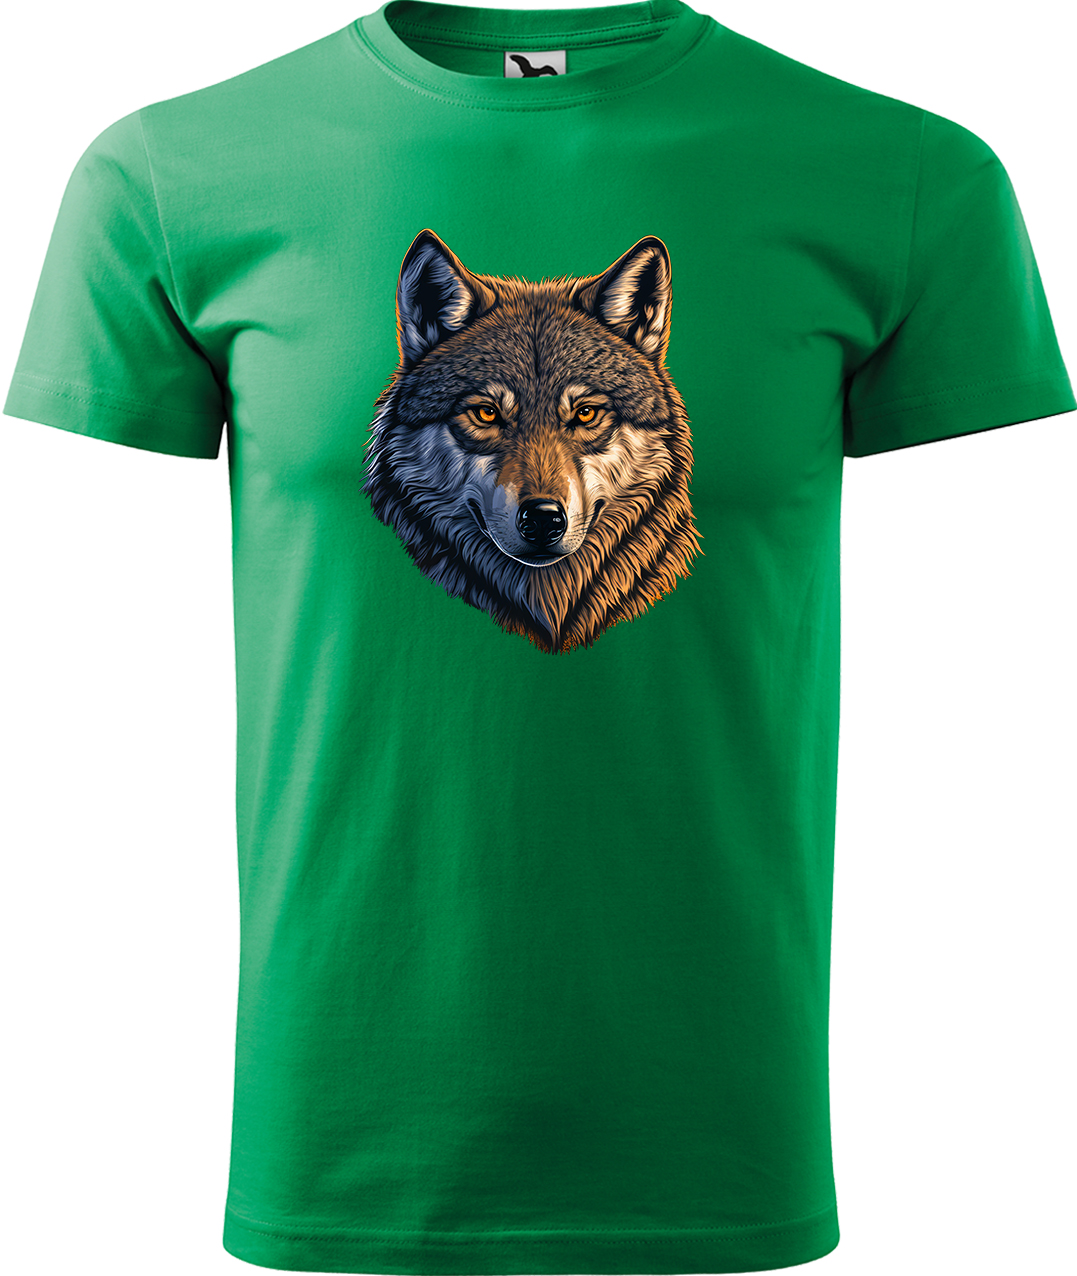 Pánské tričko s vlkem - Hlava vlka Velikost: 3XL, Barva: Středně zelená (16), Střih: pánský